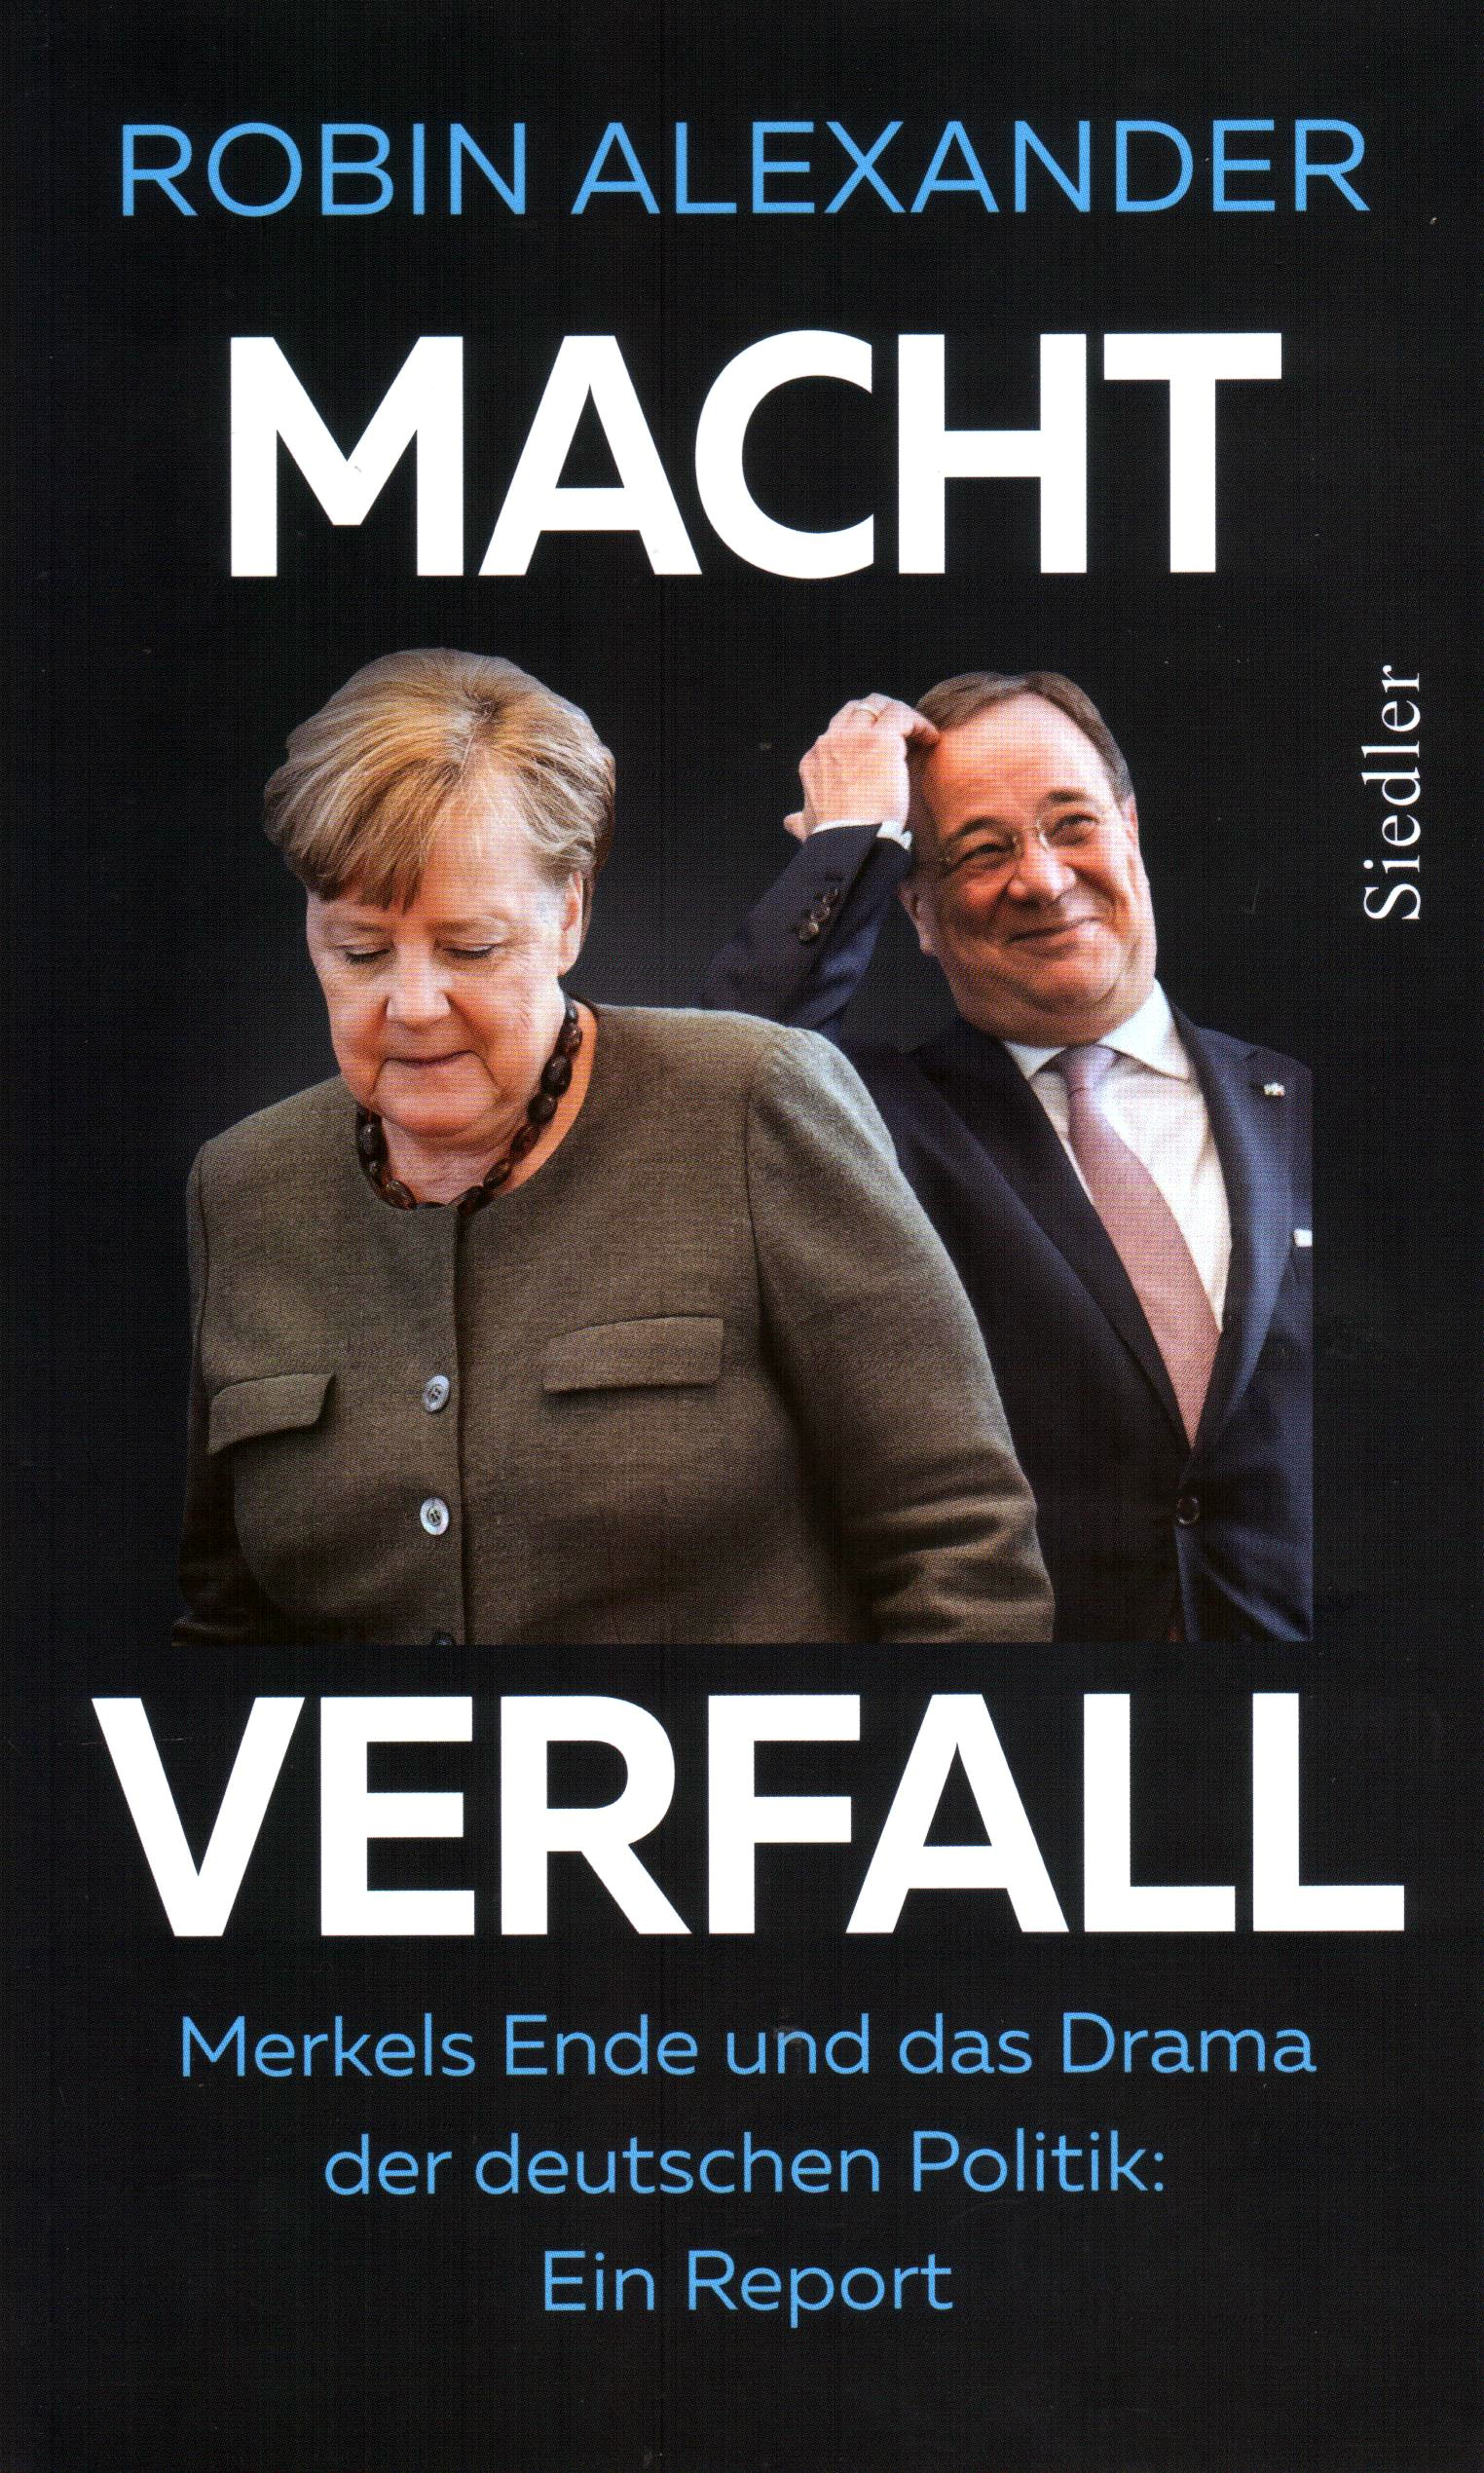 Machtverfall – Merkels Ende und das Drama der deutschen Politik: Ein Report